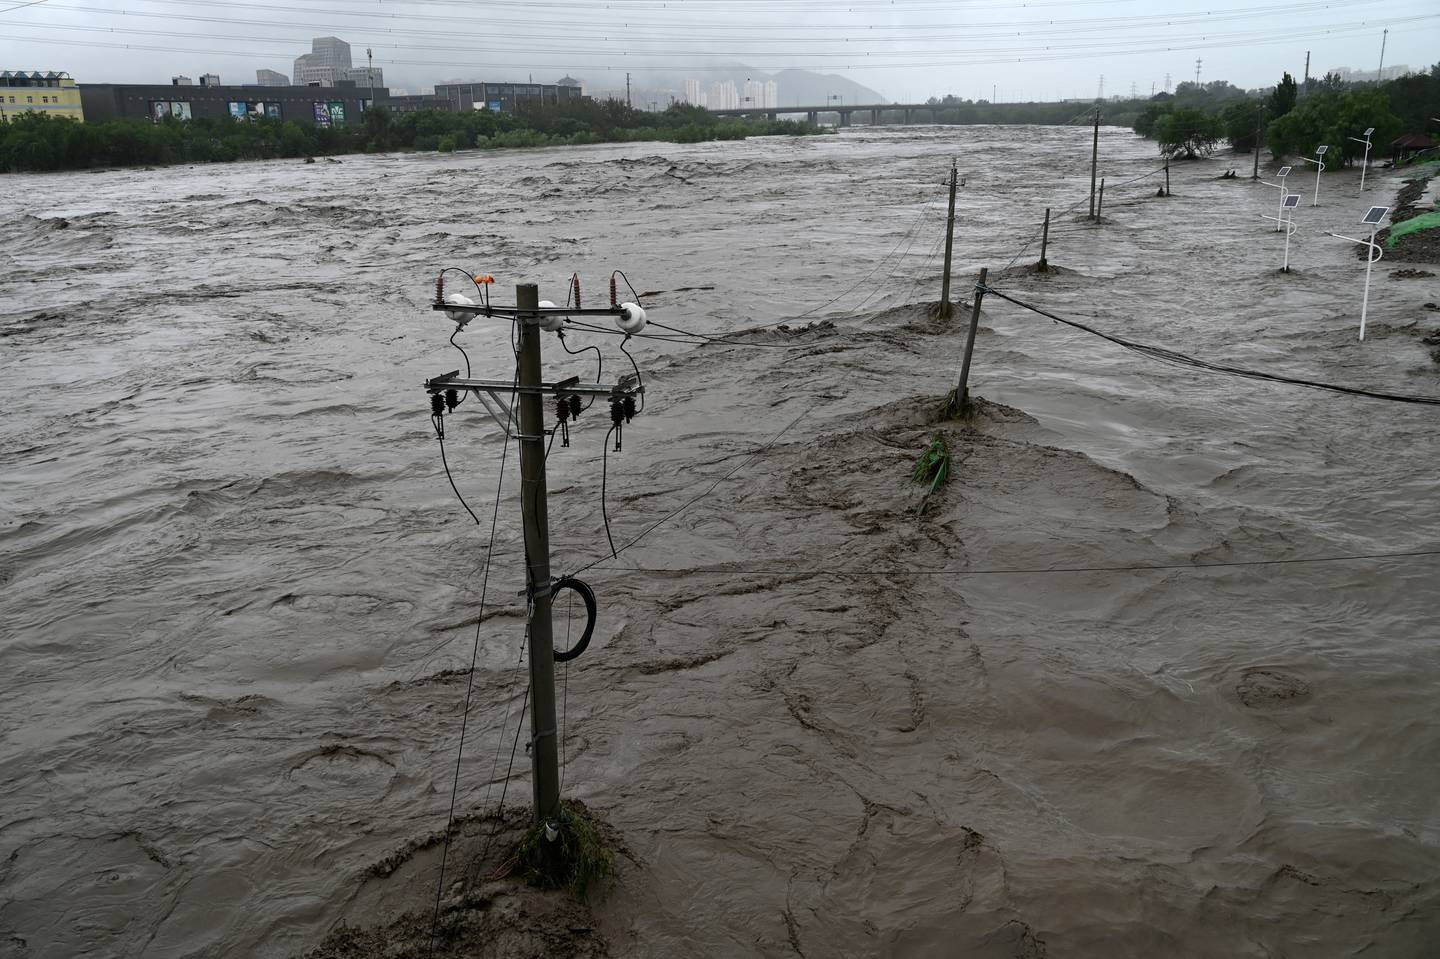 Vista del río Yongding inundado, después de fuertes lluvias en el distrito de Mentougou en Beijing